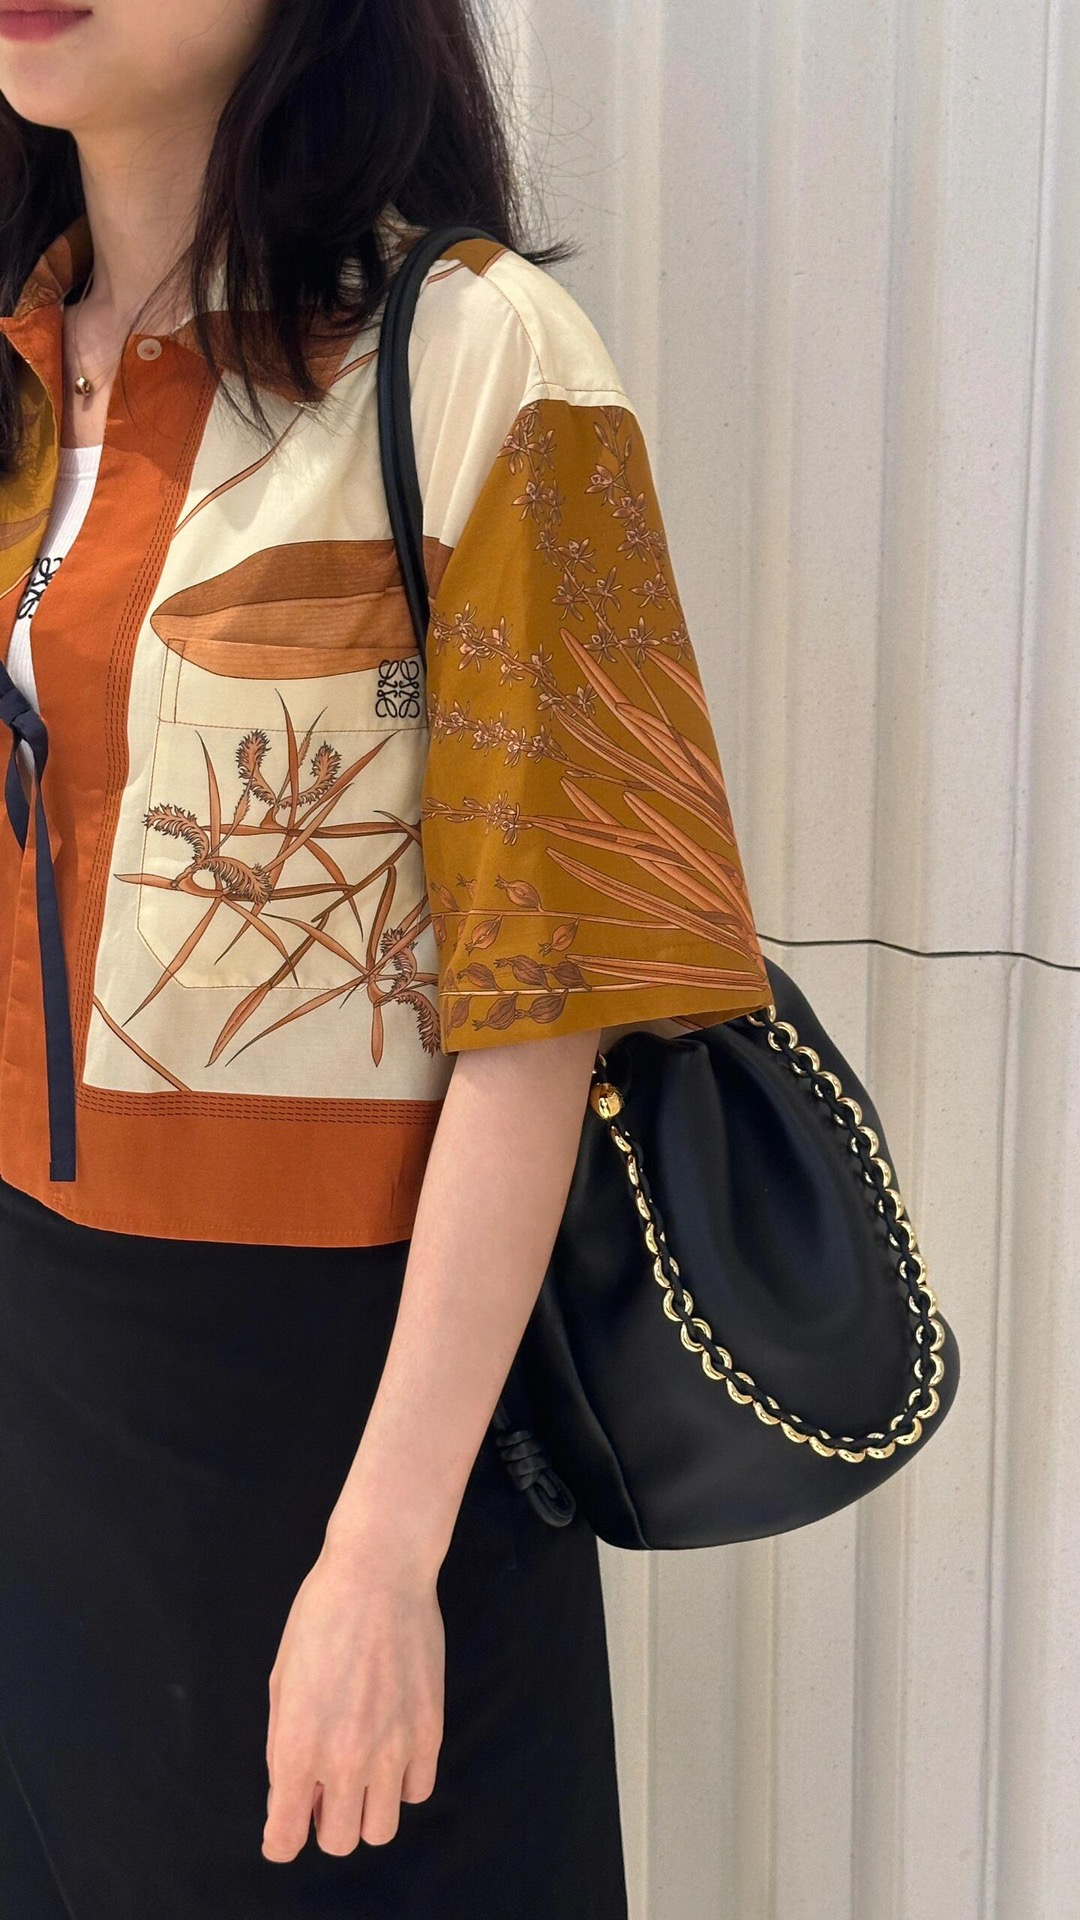 Loewe Flamenco Bags Handbags Sheepskin Fashion Chains